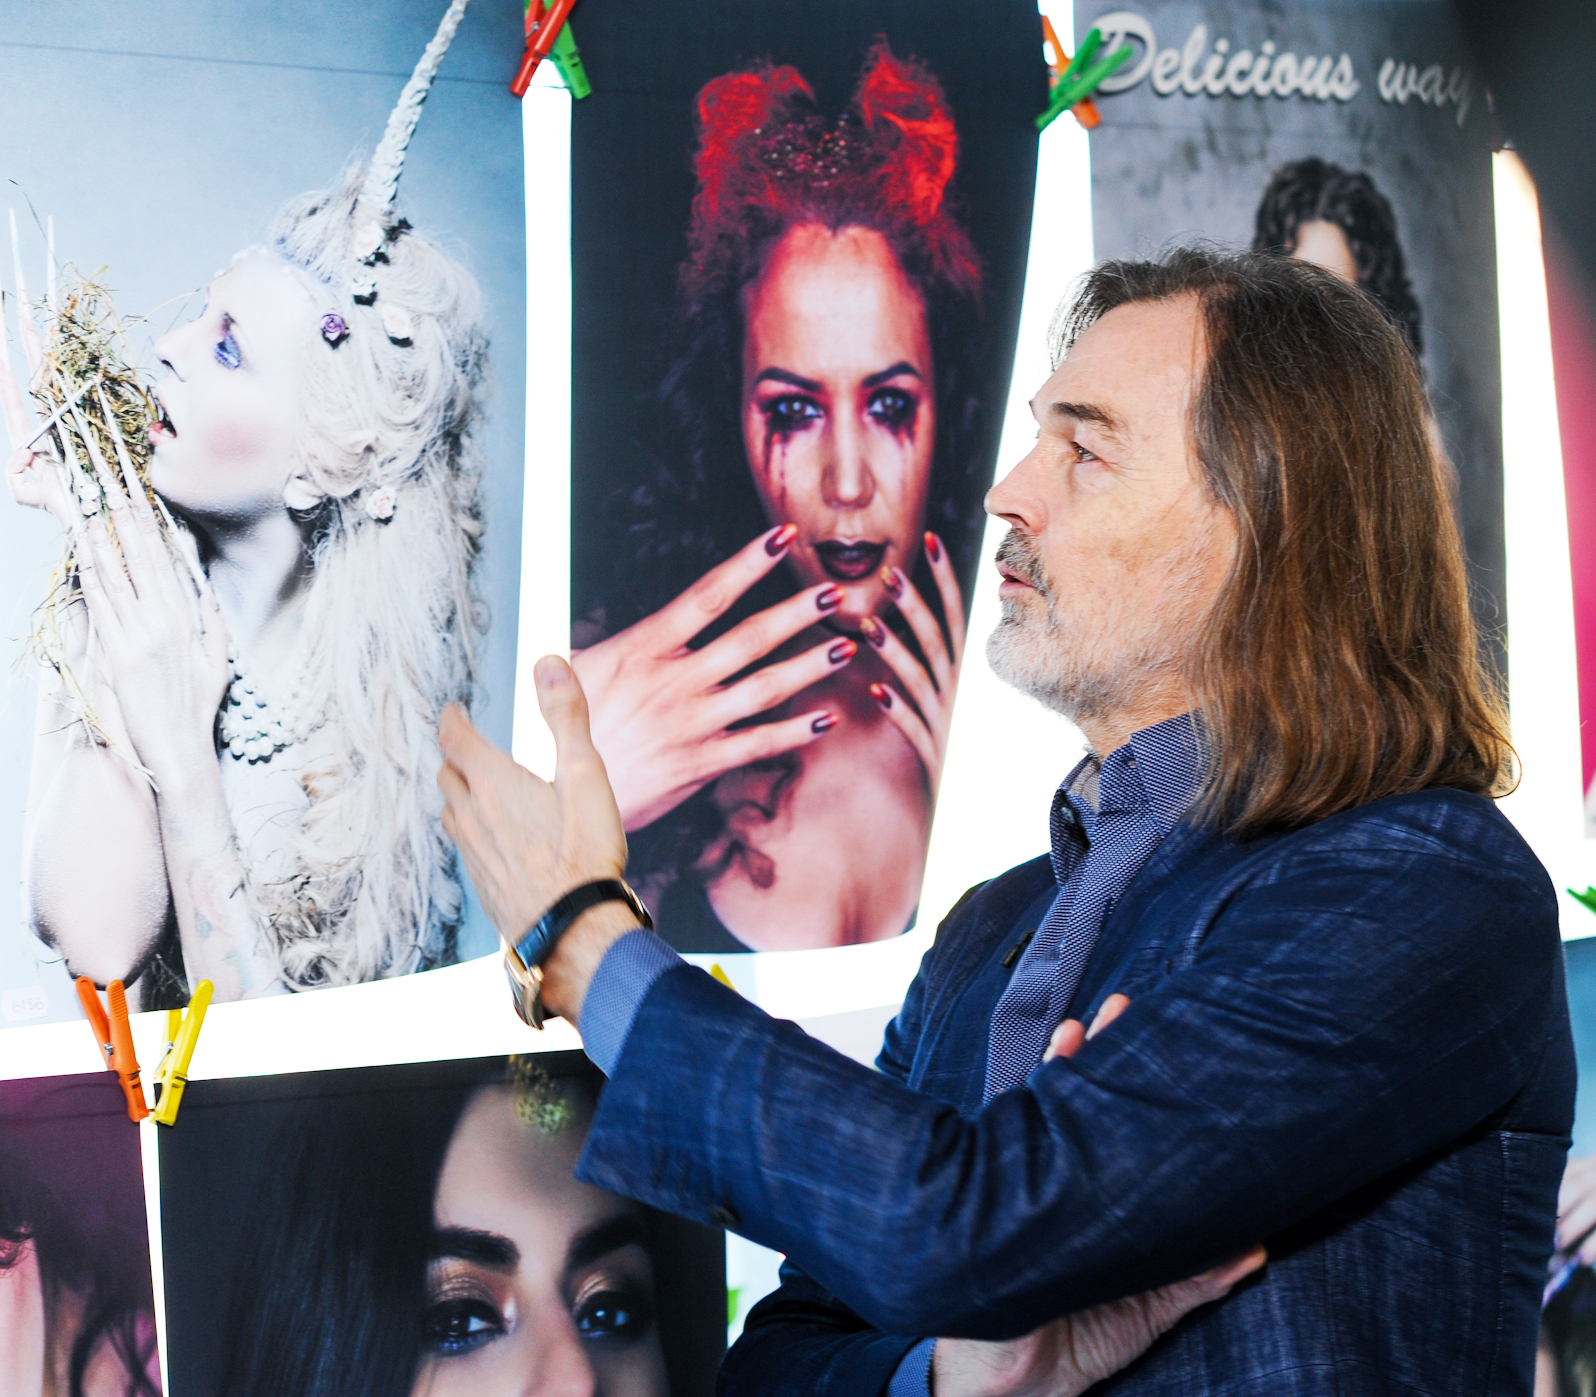 Оксана Фадеева организовала международный nail фестиваль Lilac. Заслуженный художник РФ Никас Сафронов стал официальным лицом фестиваля